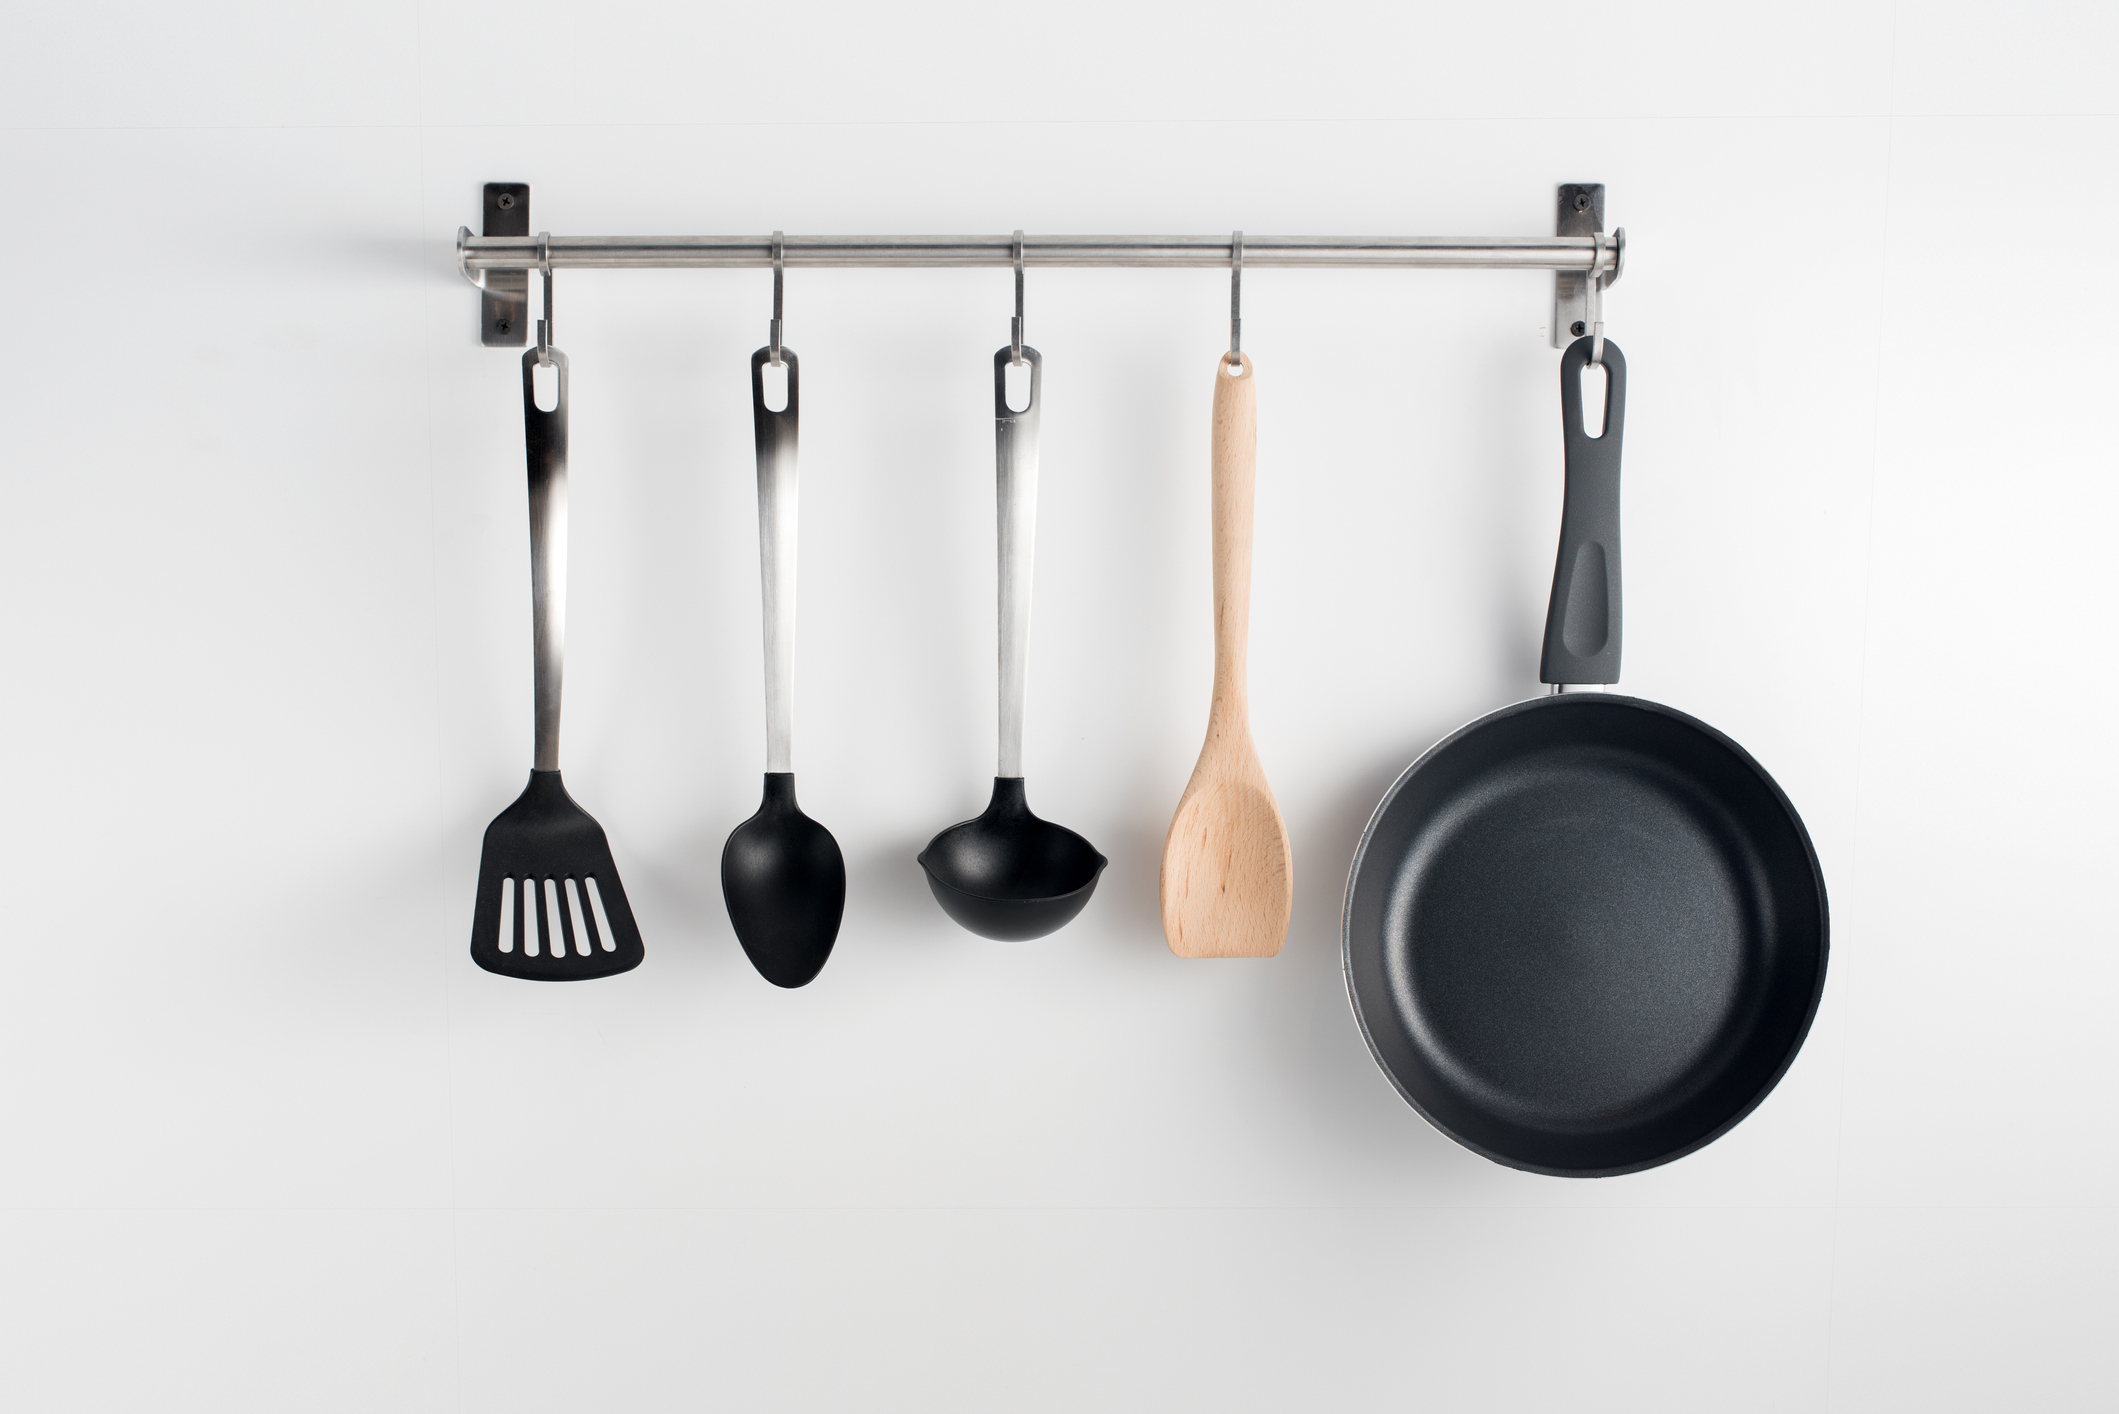 bar to hang kitchen utensils